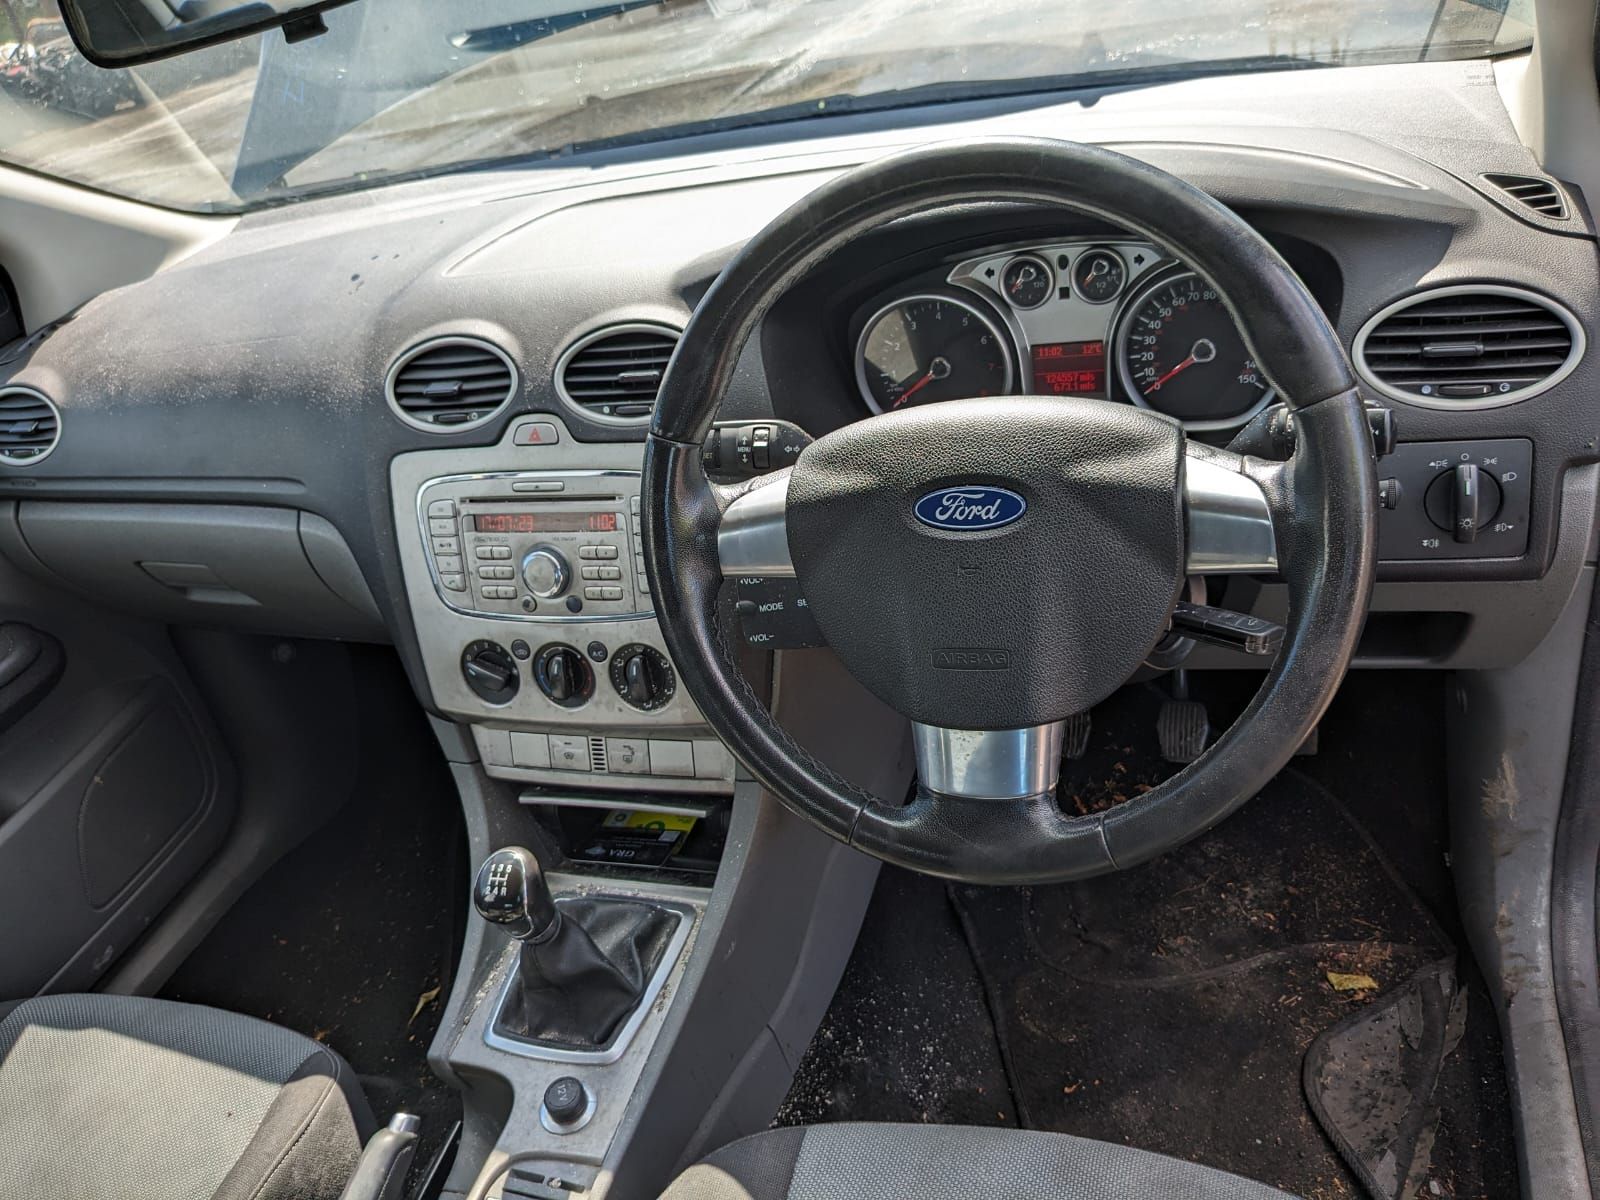 Б/У 1559586 Кнопка обогрева заднего стекла Ford Focus 2 (2004-2011)  Проверочный срок устанавливаетс bu6a1881870 Б/У запчасти